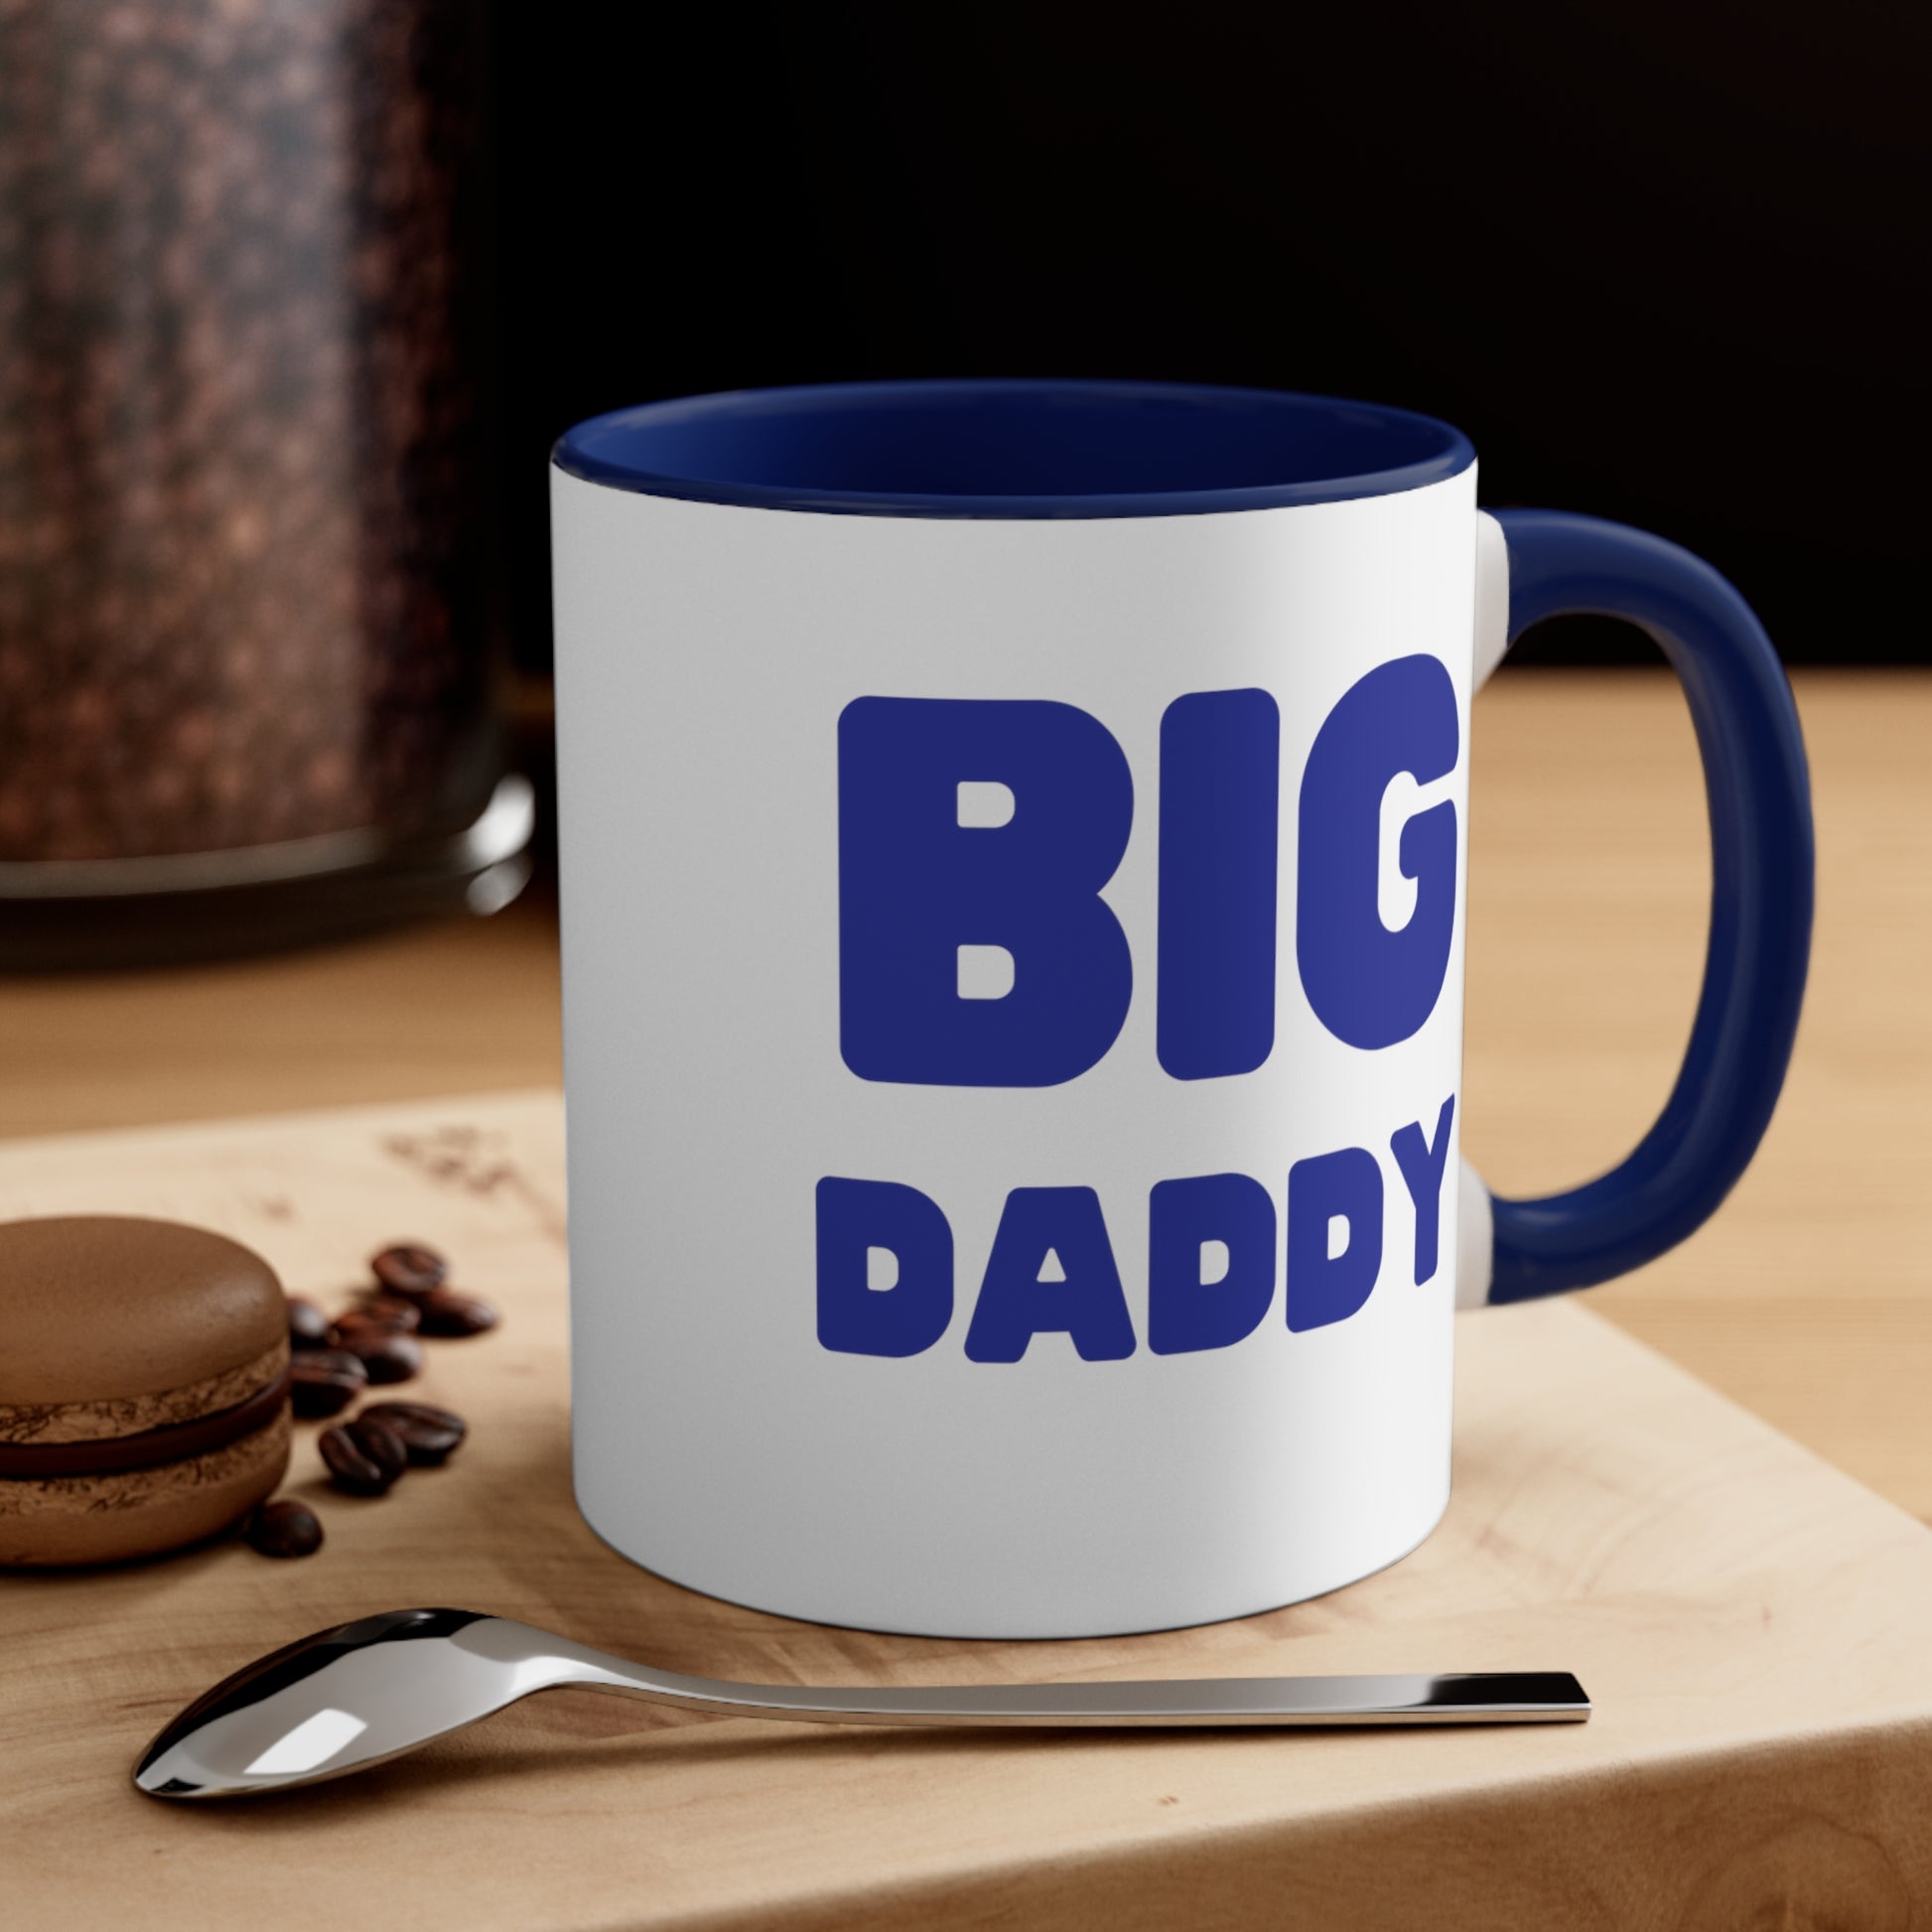 Big Daddy Accent Coffee Mug, 11oz